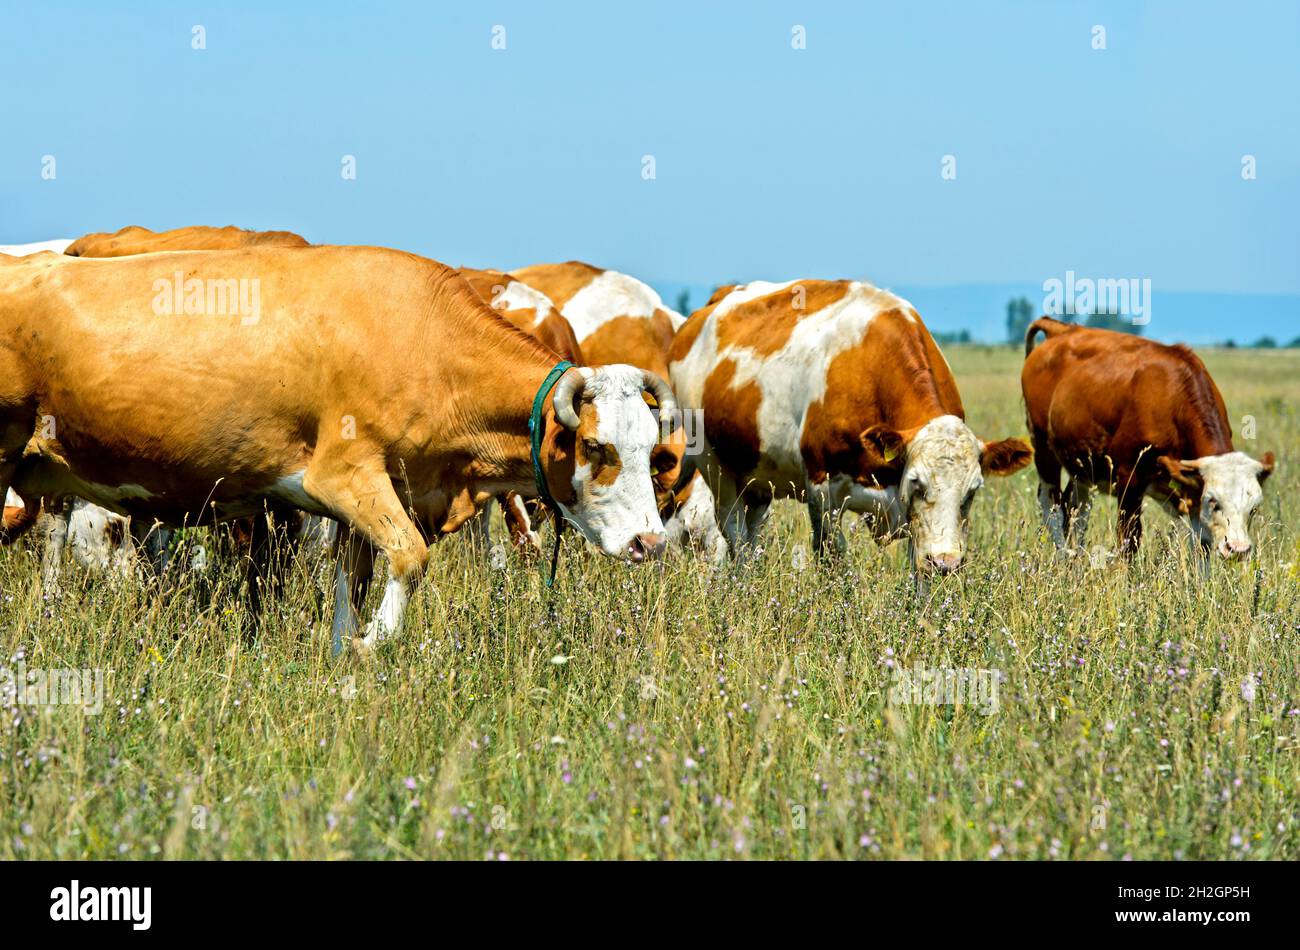 Troupeau de bovins Simmental sur un pâturage dans la zone de conservation de Langen Lacke, Neusiedlersee – Parc national Seewinkel, Apetlon, Burgenland, Autriche Banque D'Images